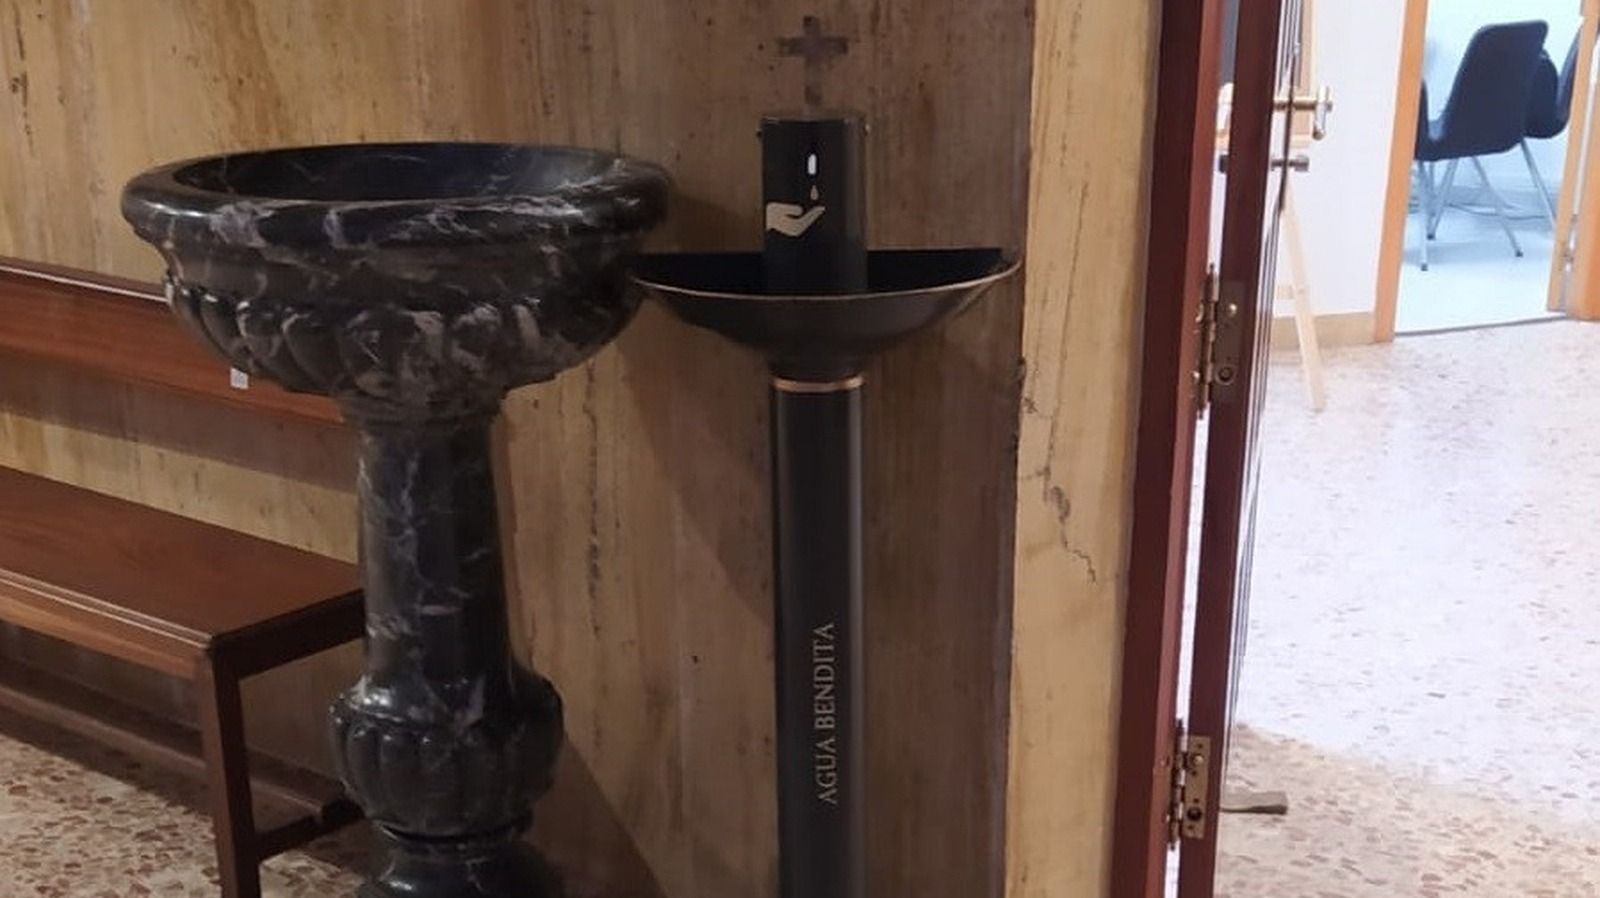 La parroquia Nuestra Señora del Carmen instala un dispensador de agua bendita para reducir el riesgo de contagio